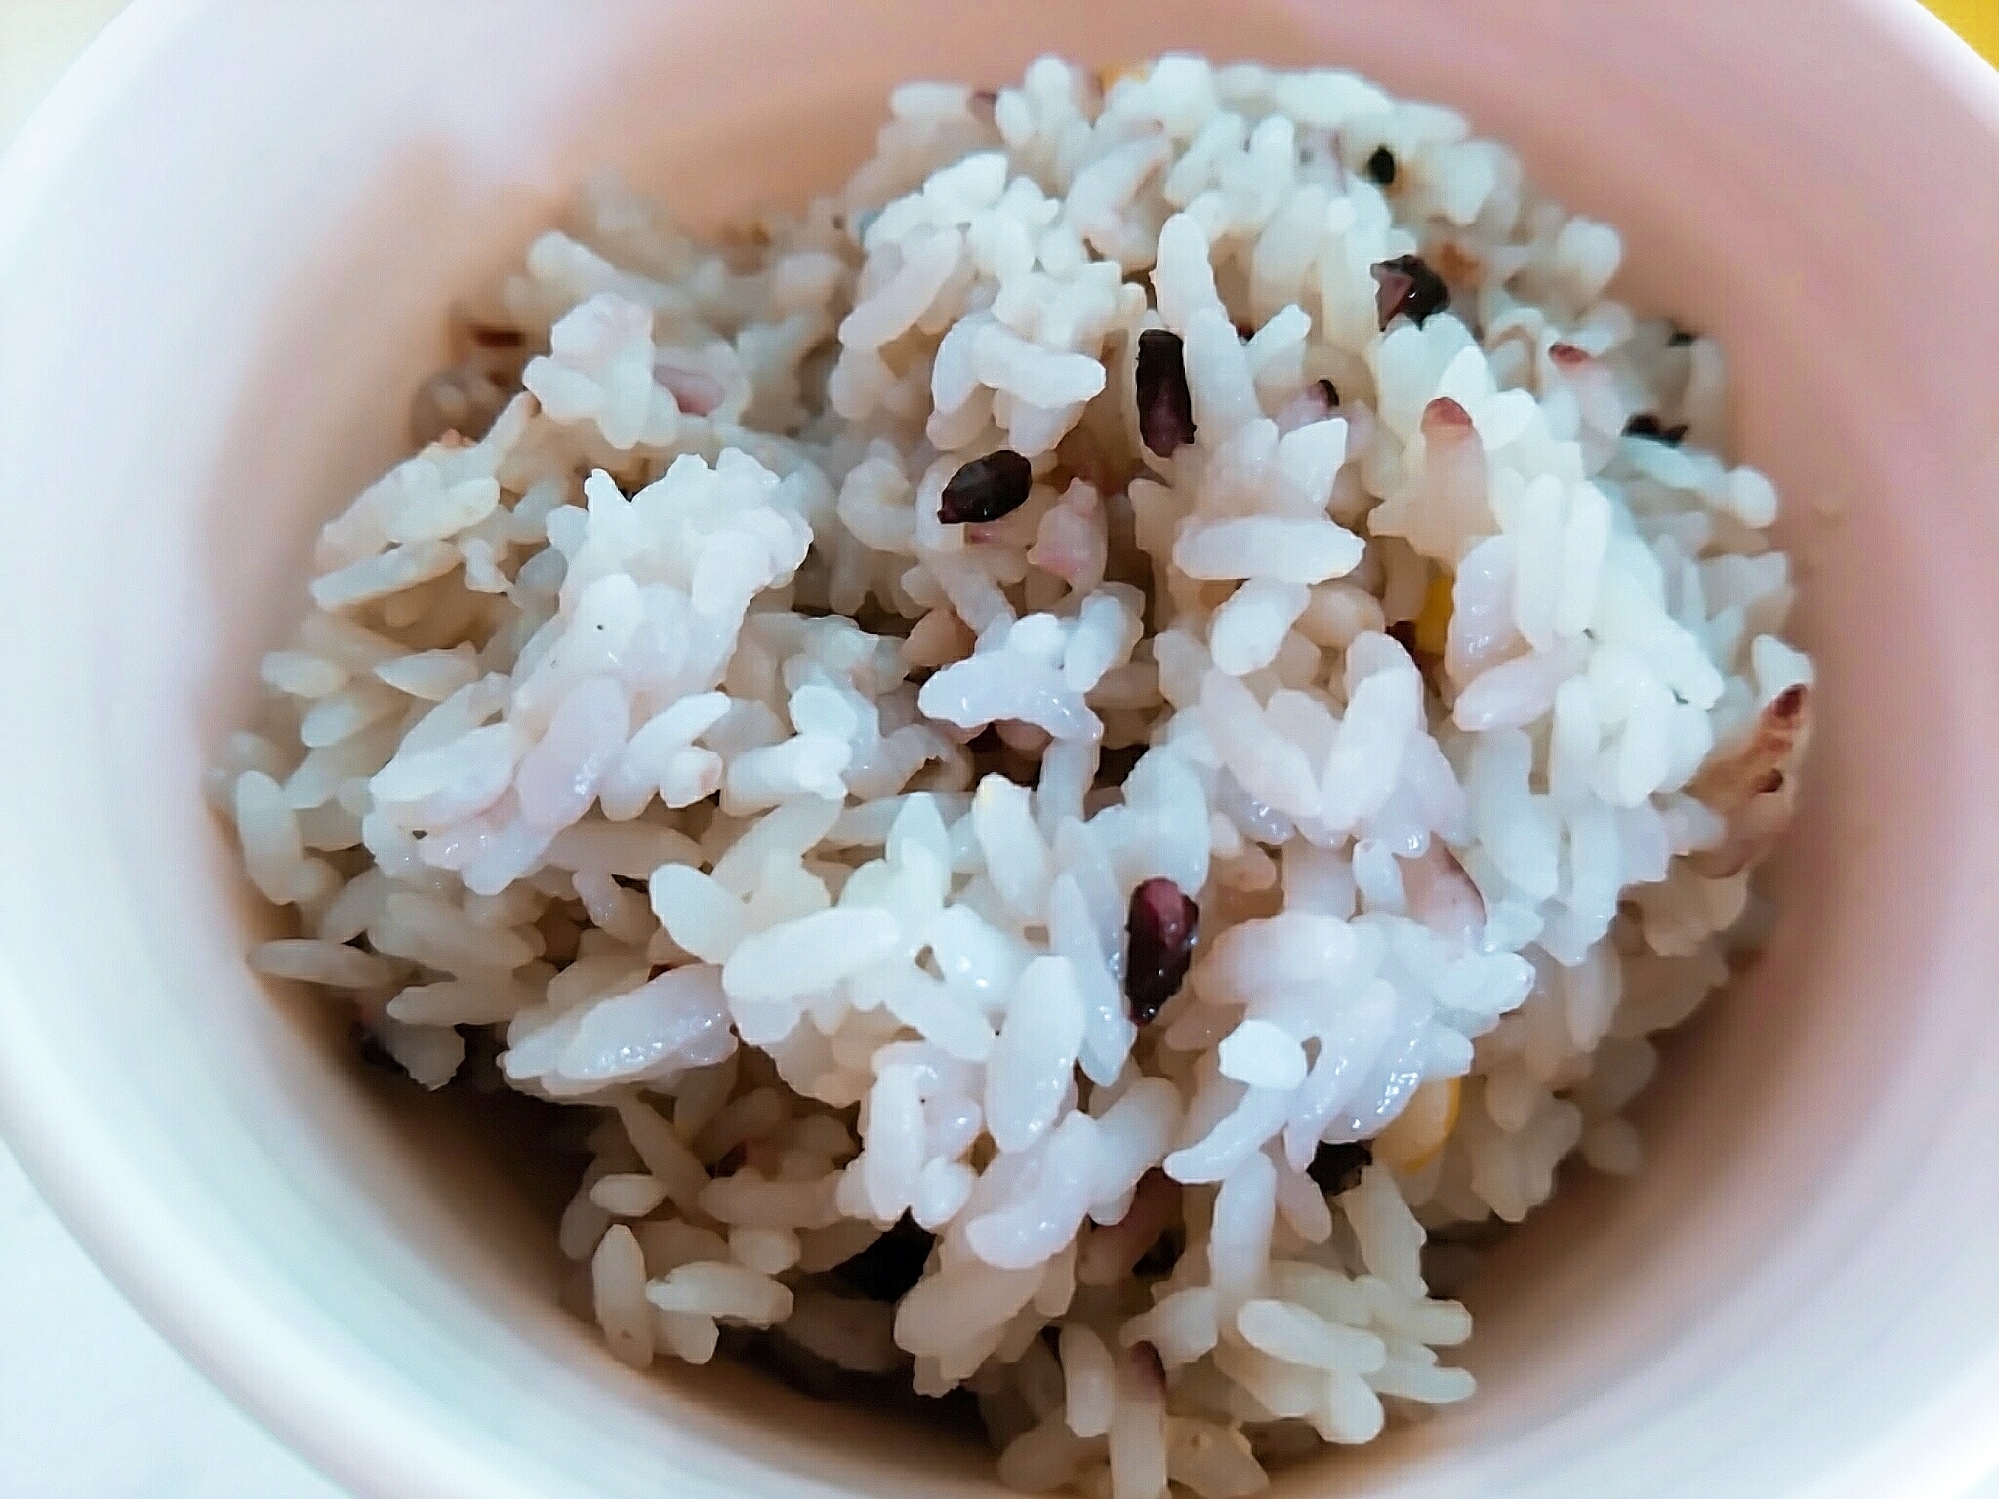 古代米ご飯